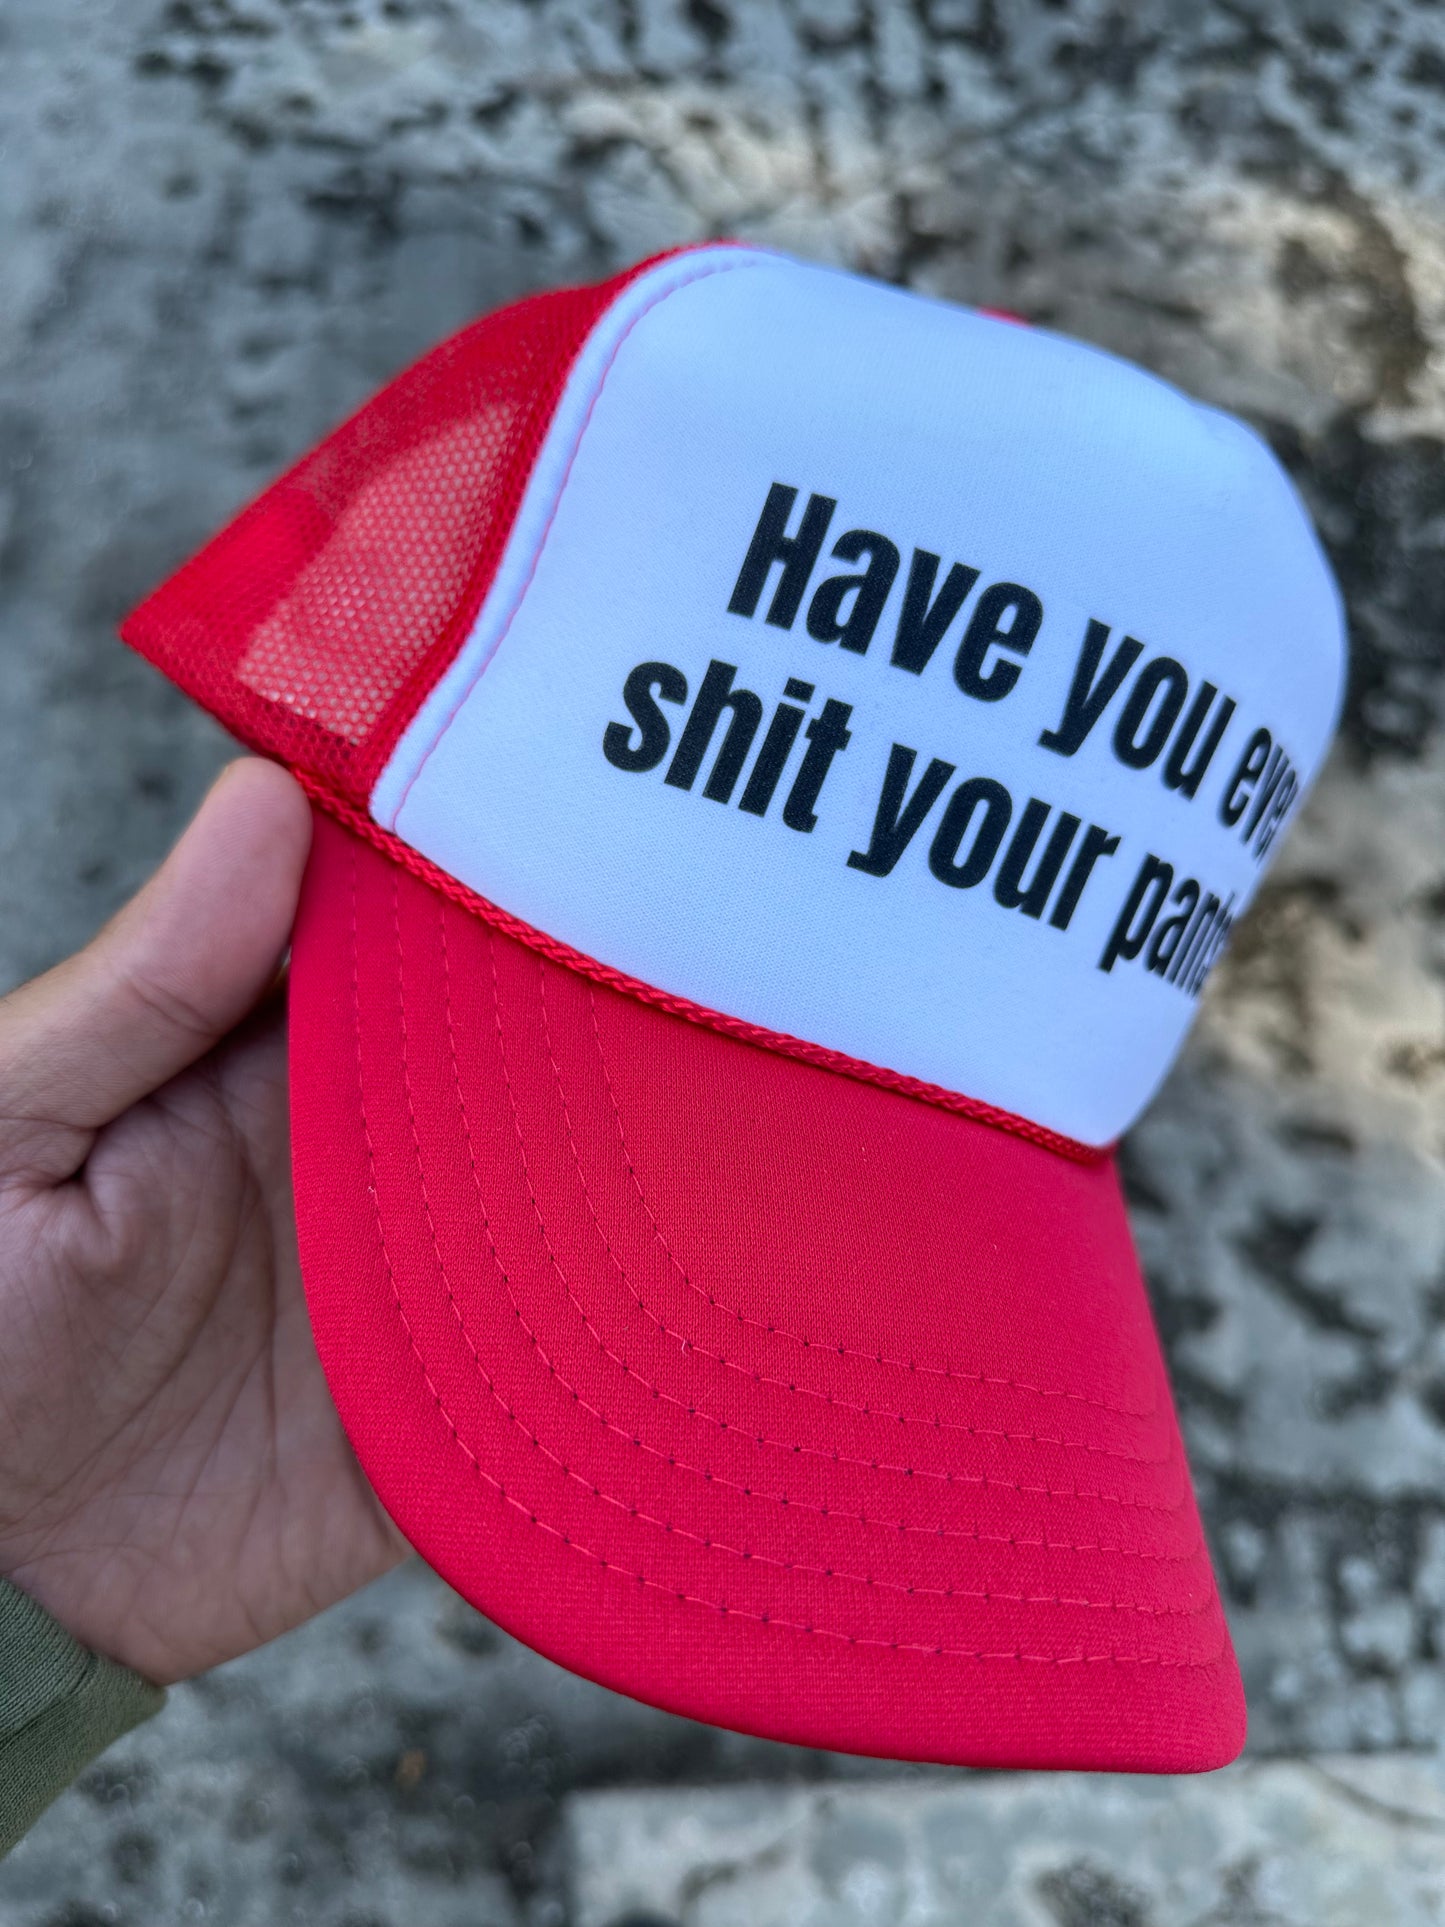 Vintage Have You Ever Adult Humor Trucker Snapback Hat